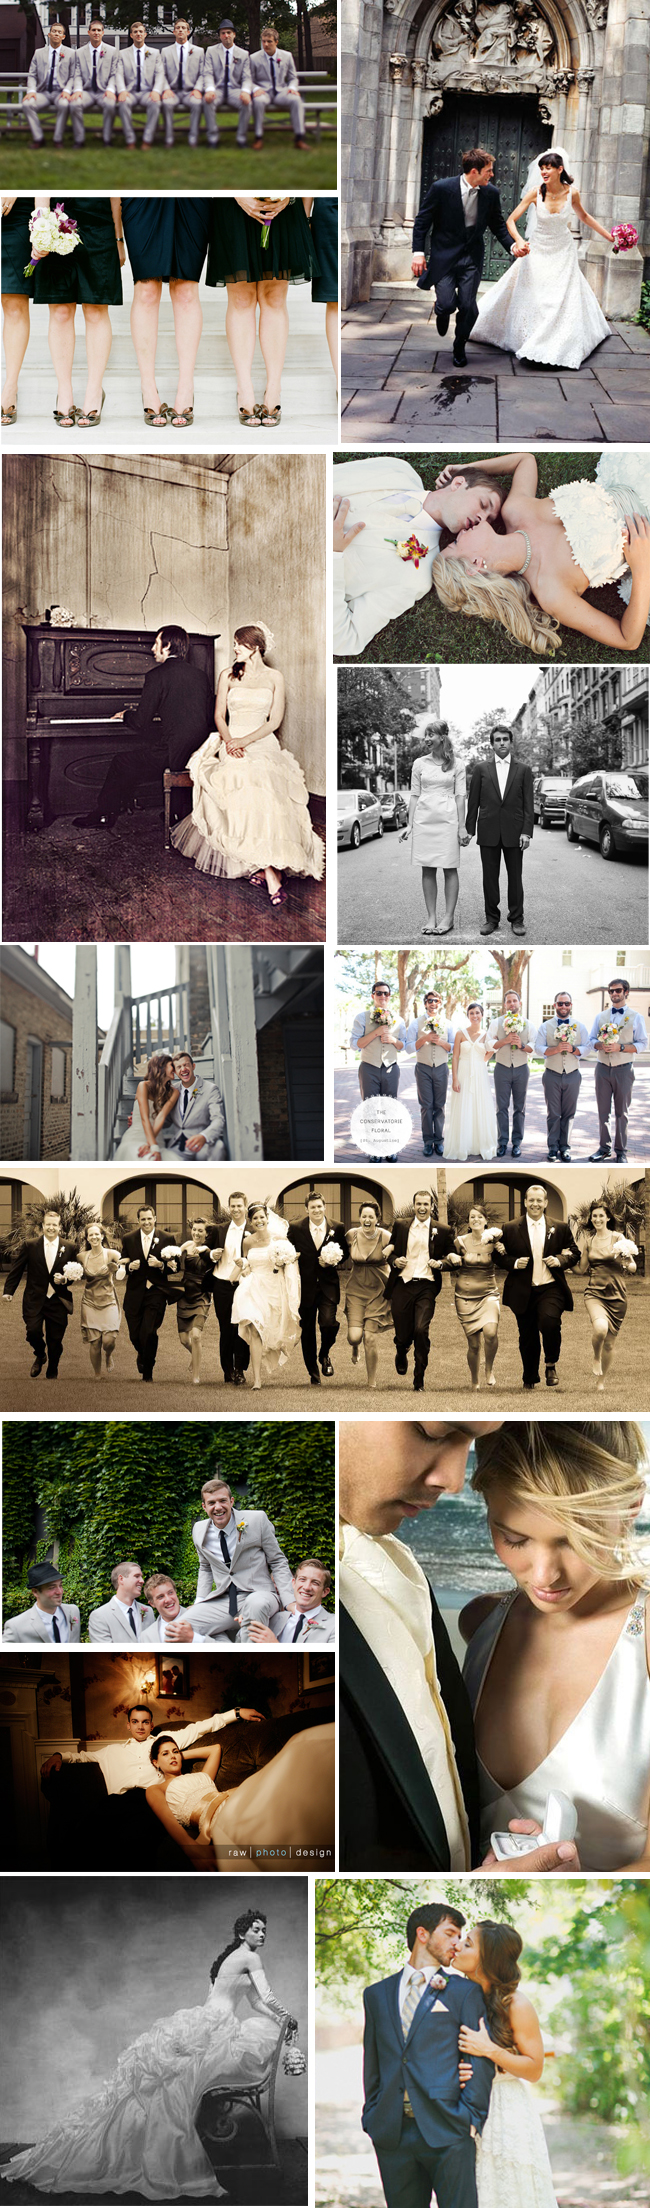 image of wedding photo ideas